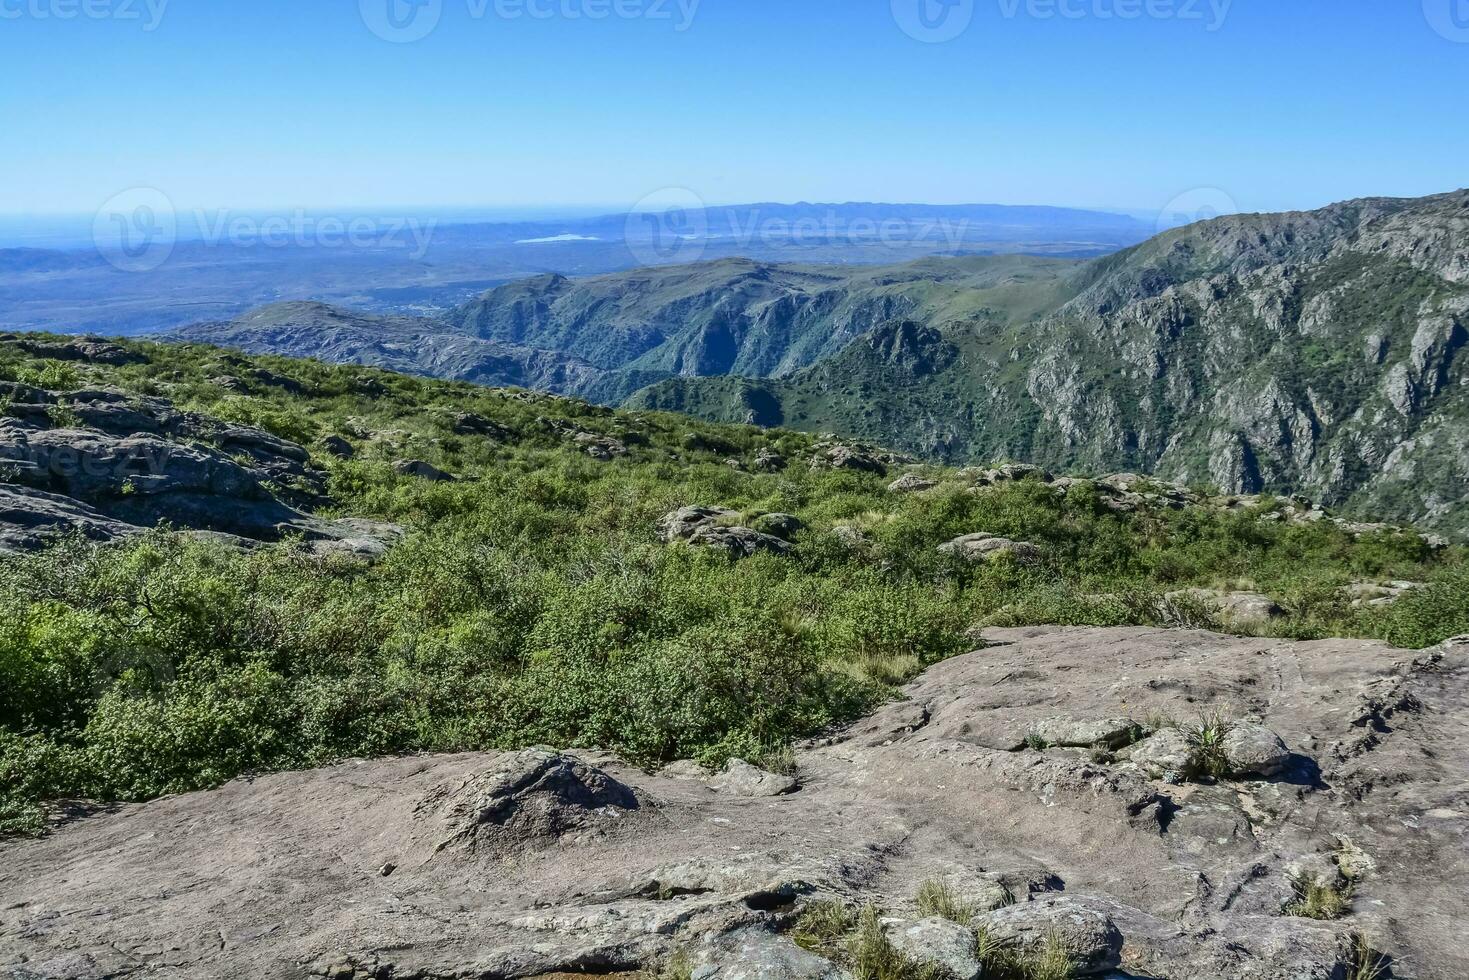 quebrada del condorito nazionale parco, cordova Provincia, argentina foto